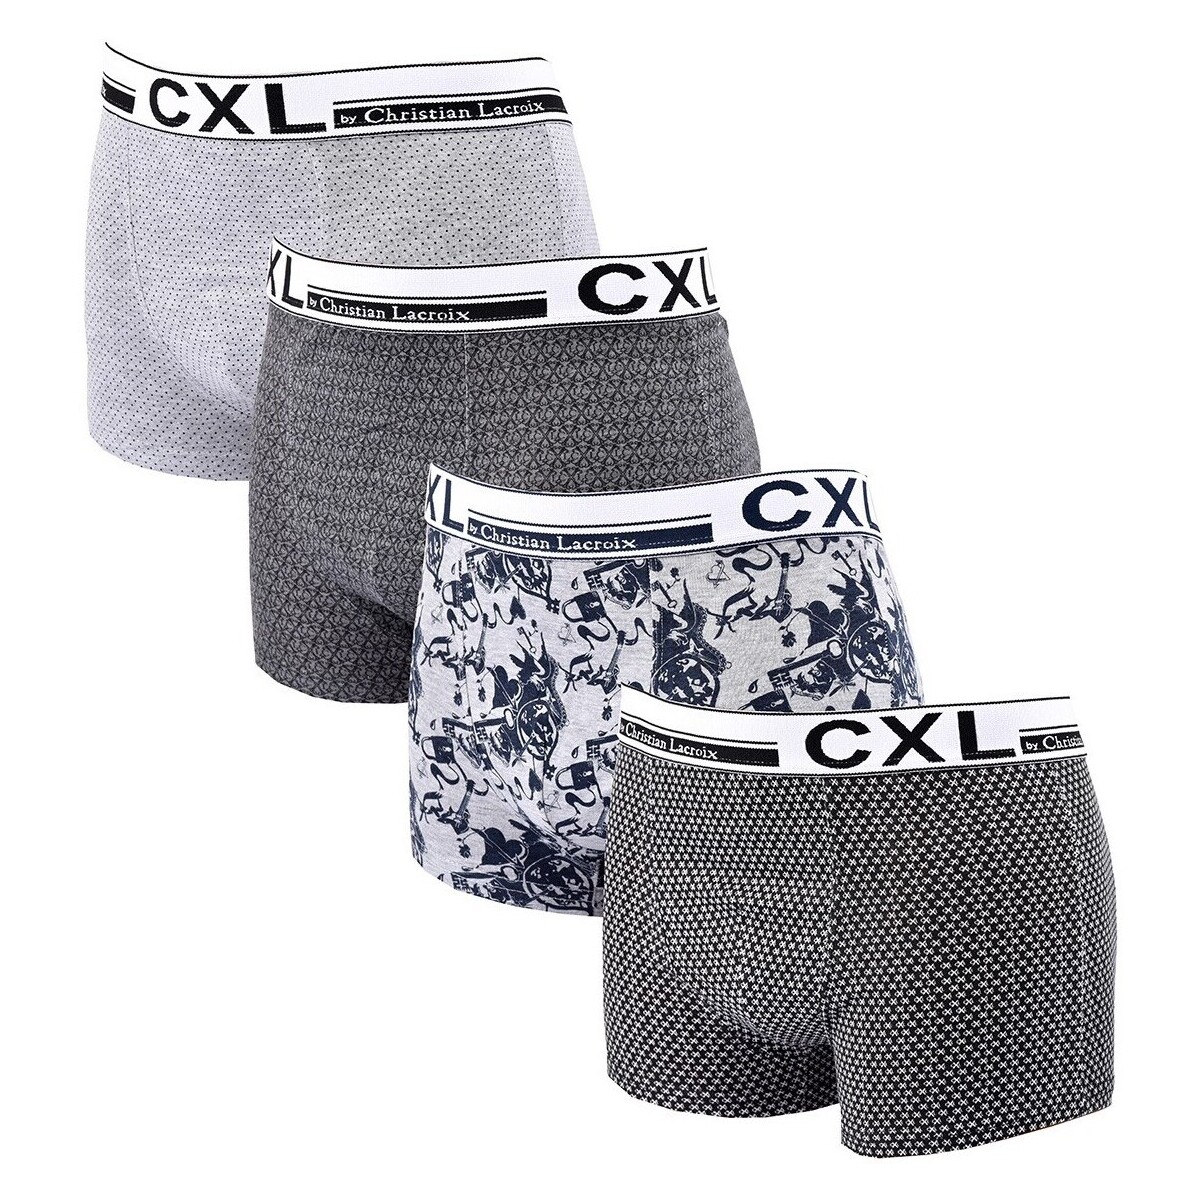 Sous-vêtements Homme Boxers Christian Lacroix Boxer CXL By LACROIX X4 Multicolore